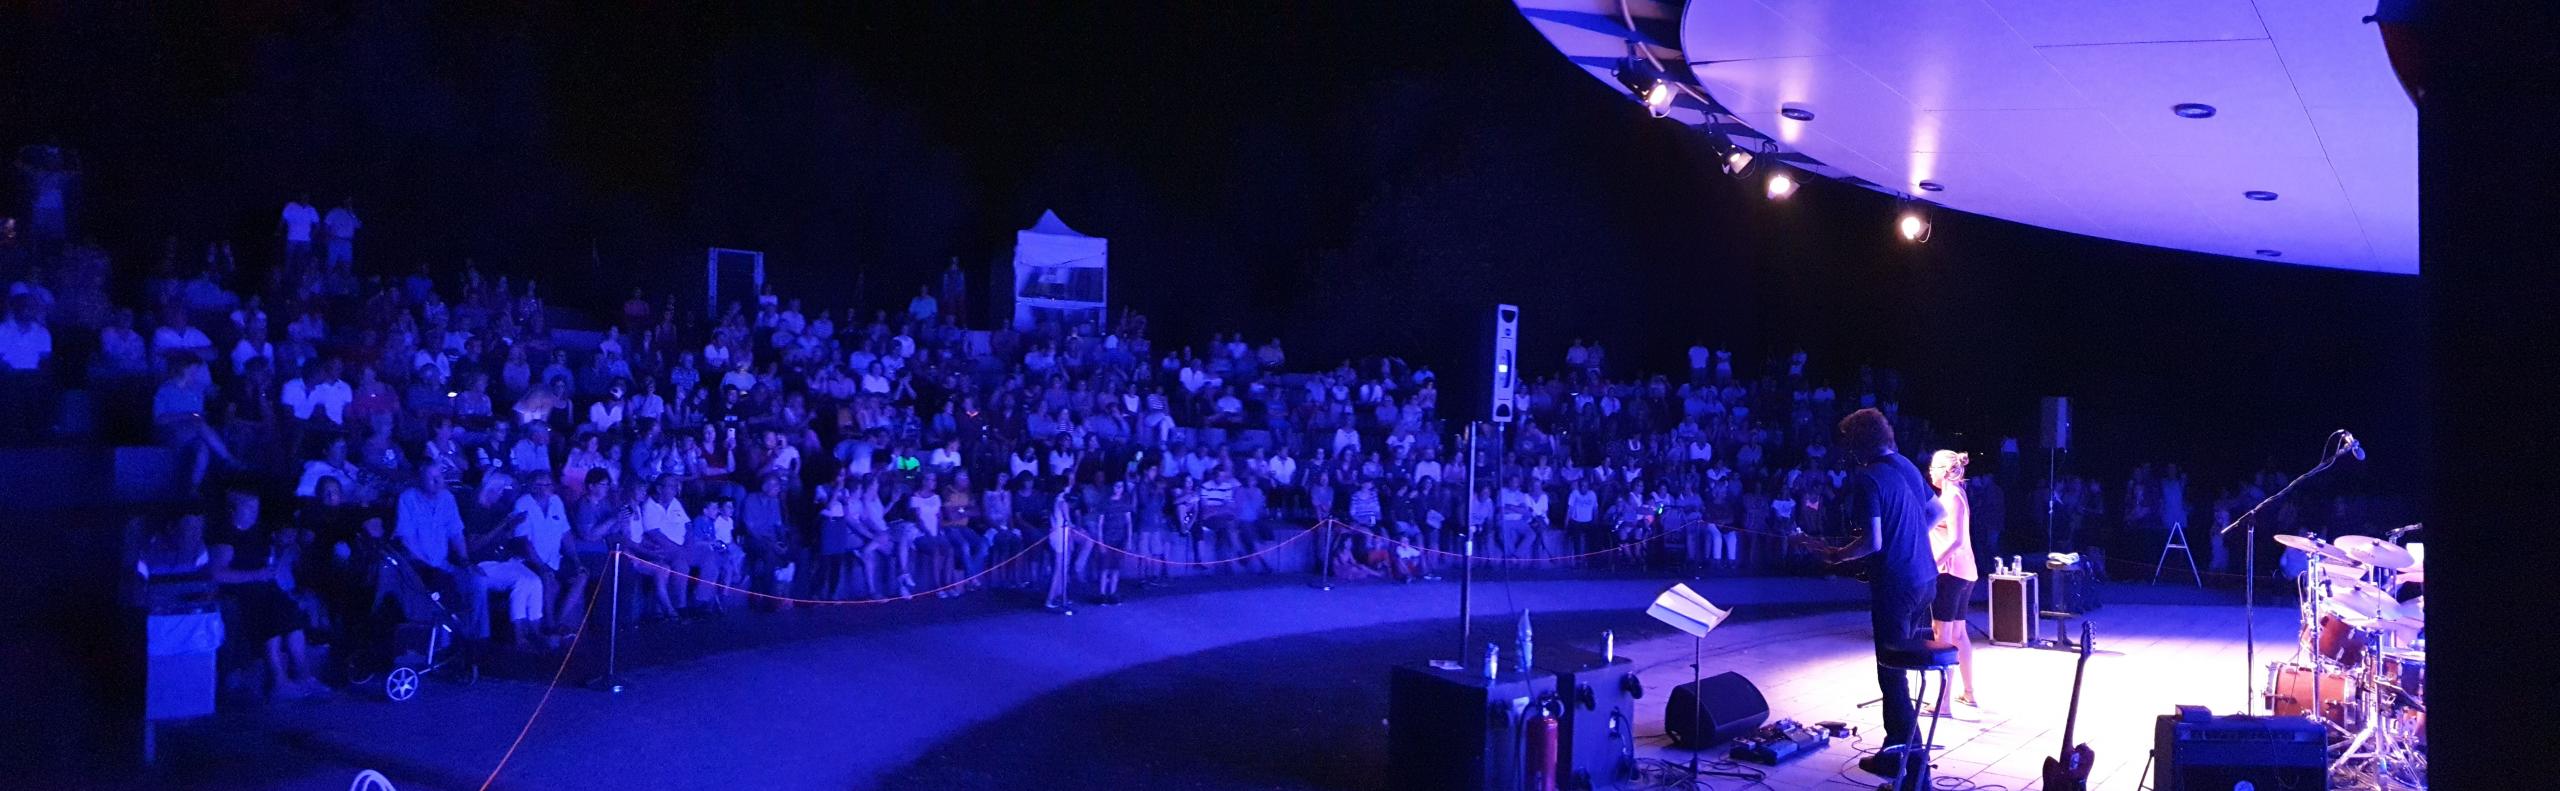 Musikband spielt bei Nacht auf der Bühne im Park der Sinne vor Publikum